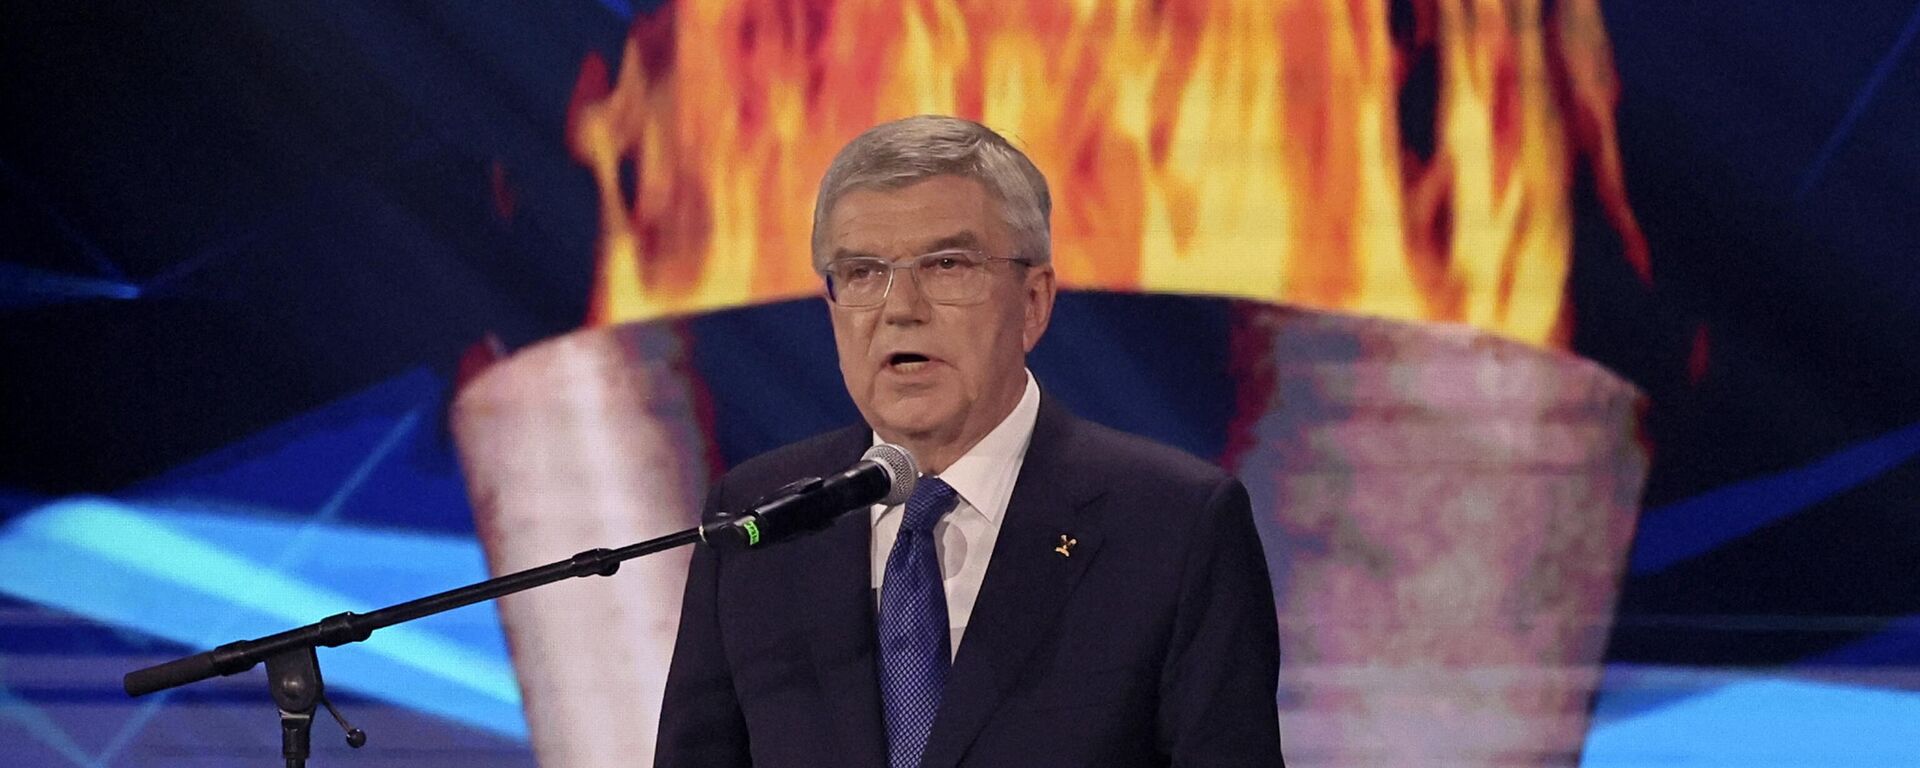 Thomas Bach, presidente del Comité Olímpico Internacional durante una ceremonia en Israel en septiembre de 2022 - Sputnik Mundo, 1920, 16.11.2022